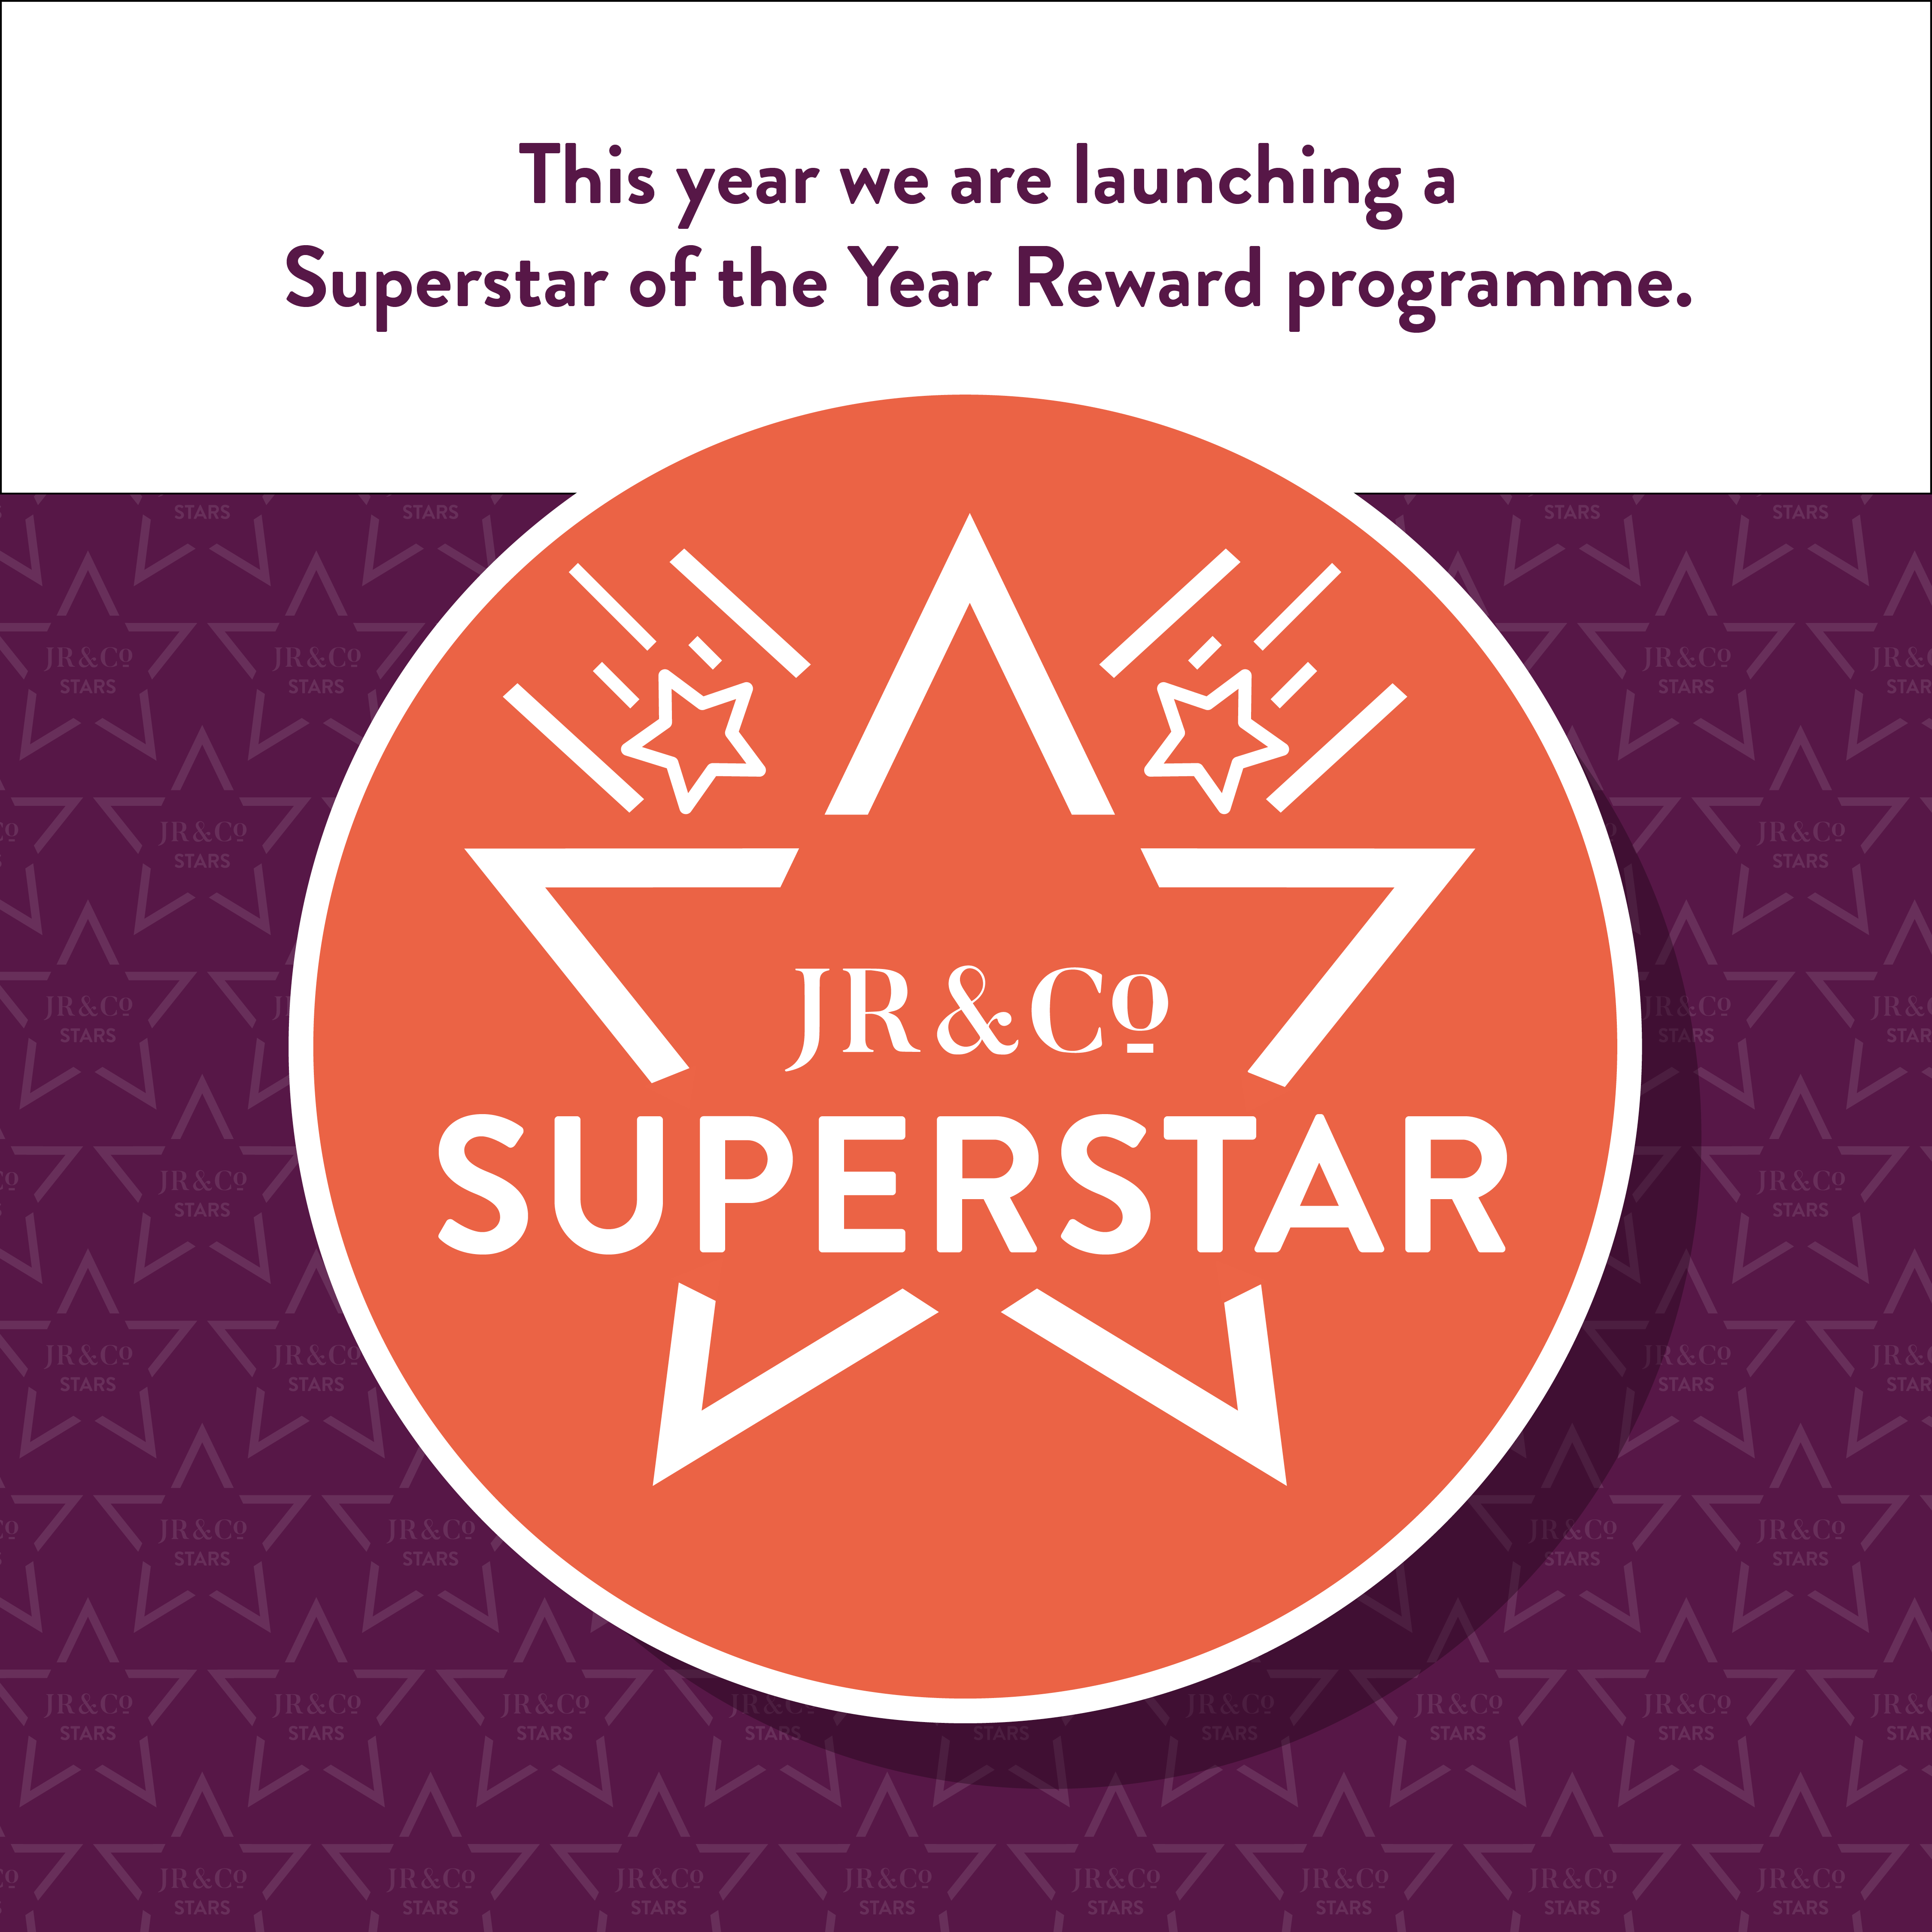 Superstar of the Year Reward programme